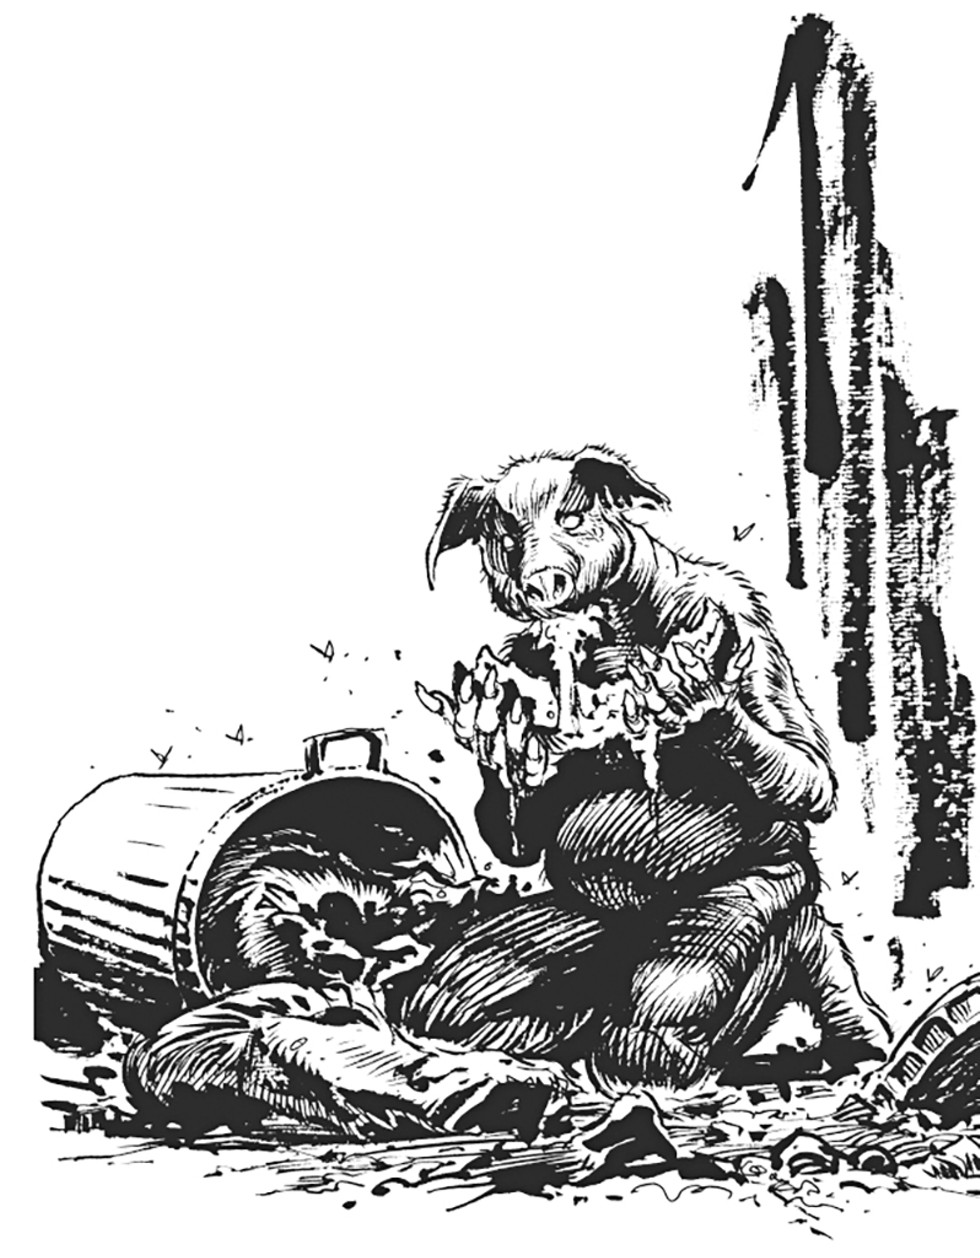 Illustration of Pigman by Stephen R. Bissette - COURTESY